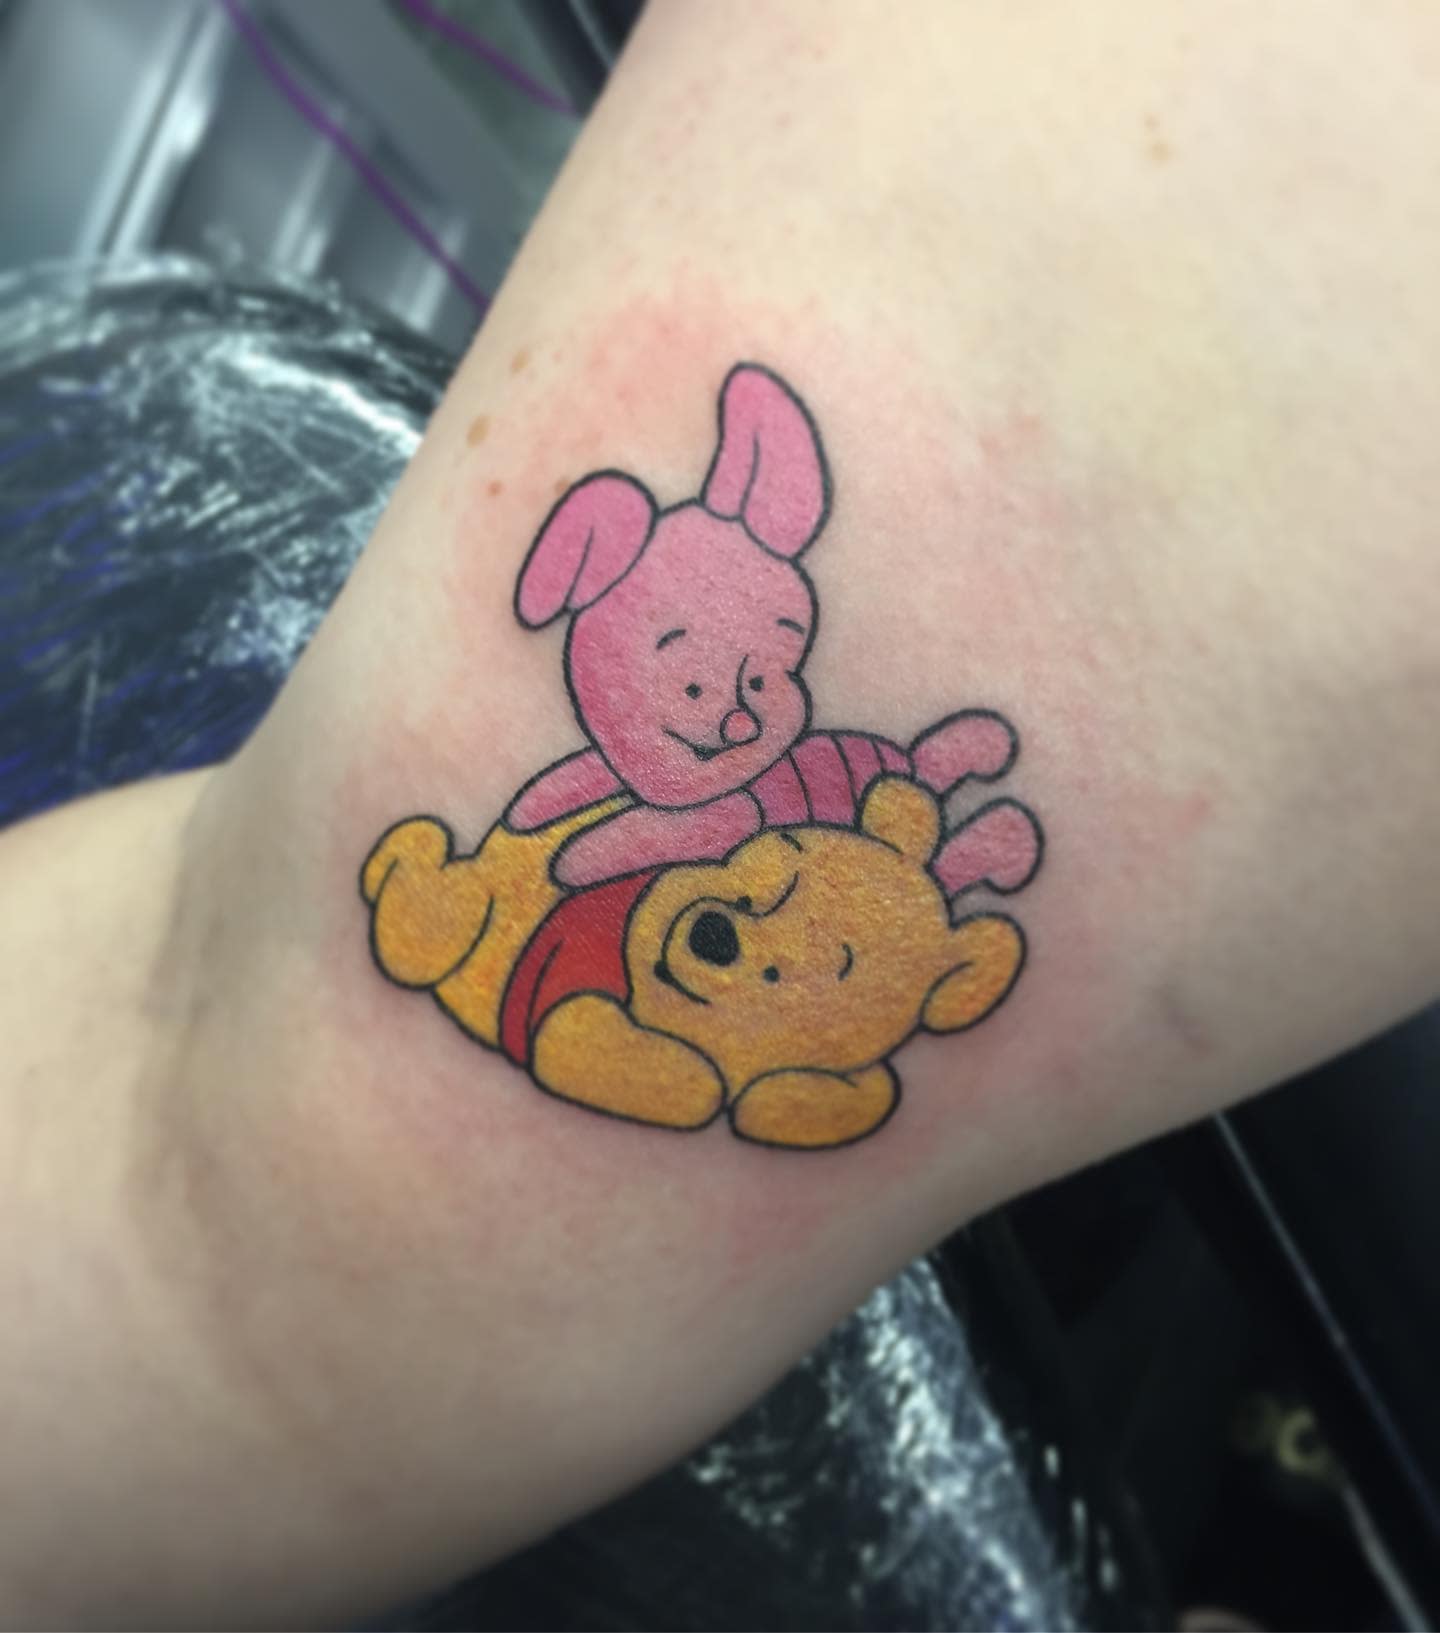 Tatuaje Piglet Winnie the Pooh -carlyjademason